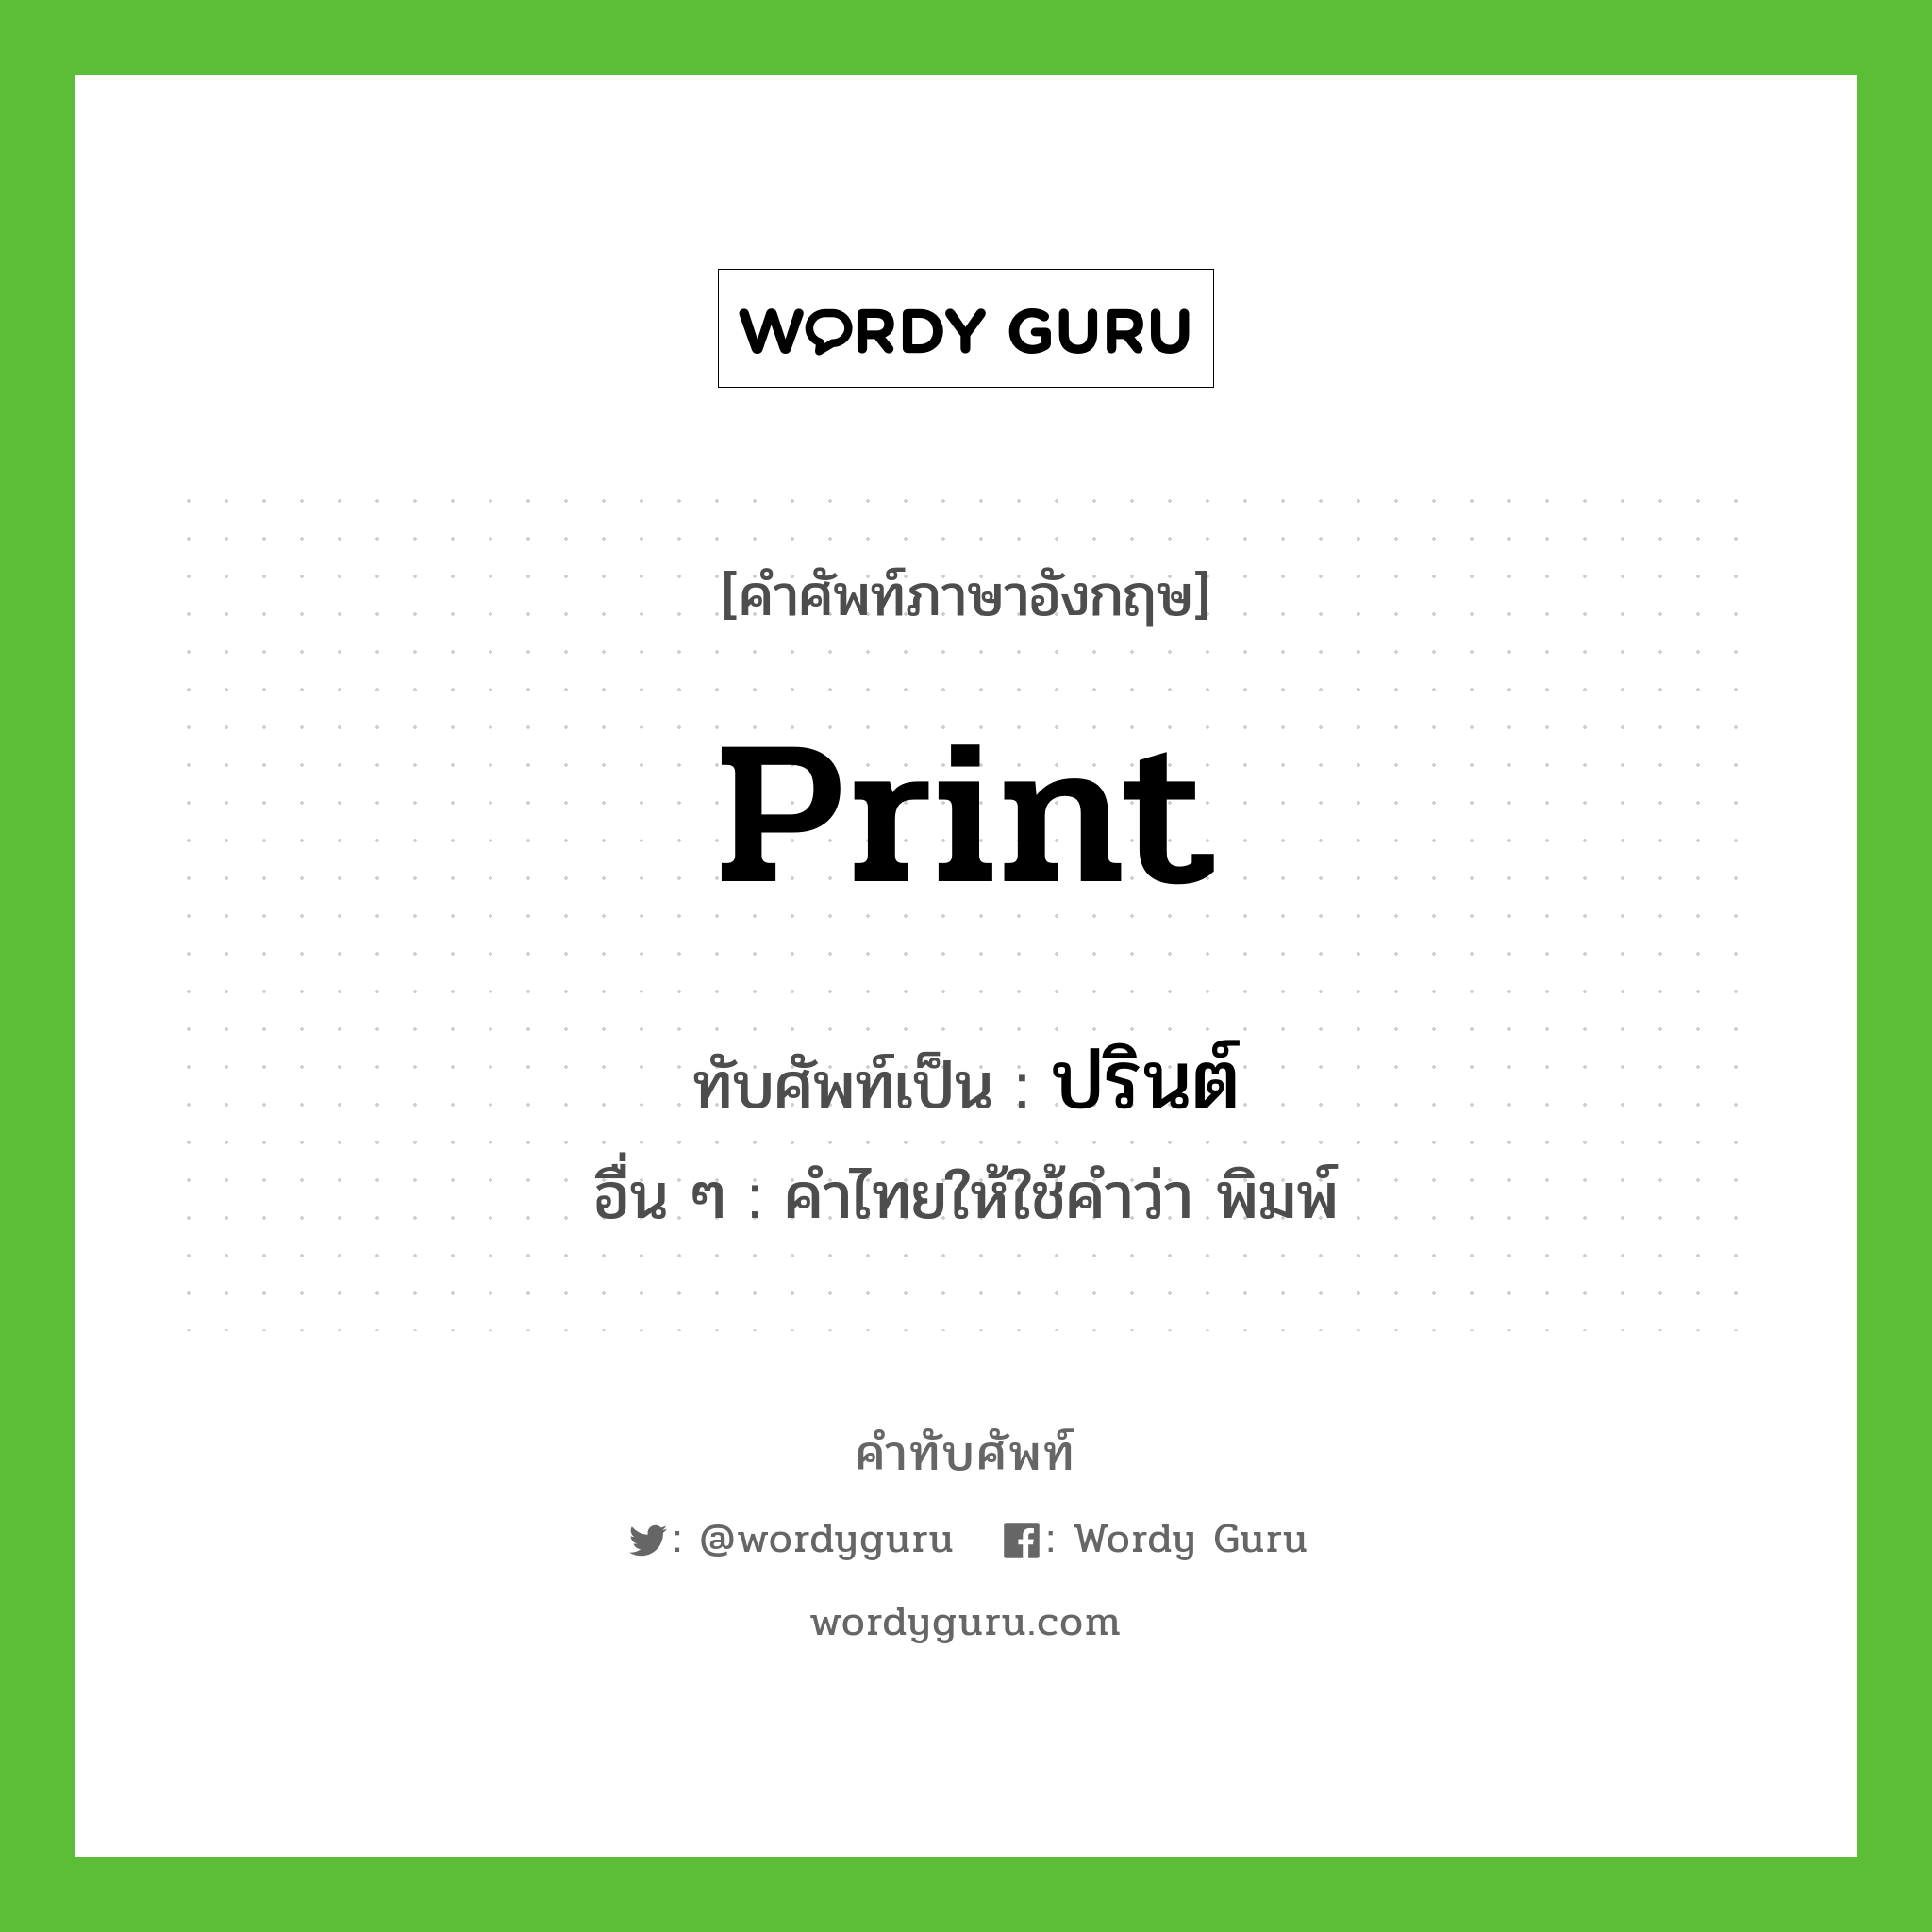 print เขียนเป็นคำไทยว่าอะไร - คำทับศัพท์